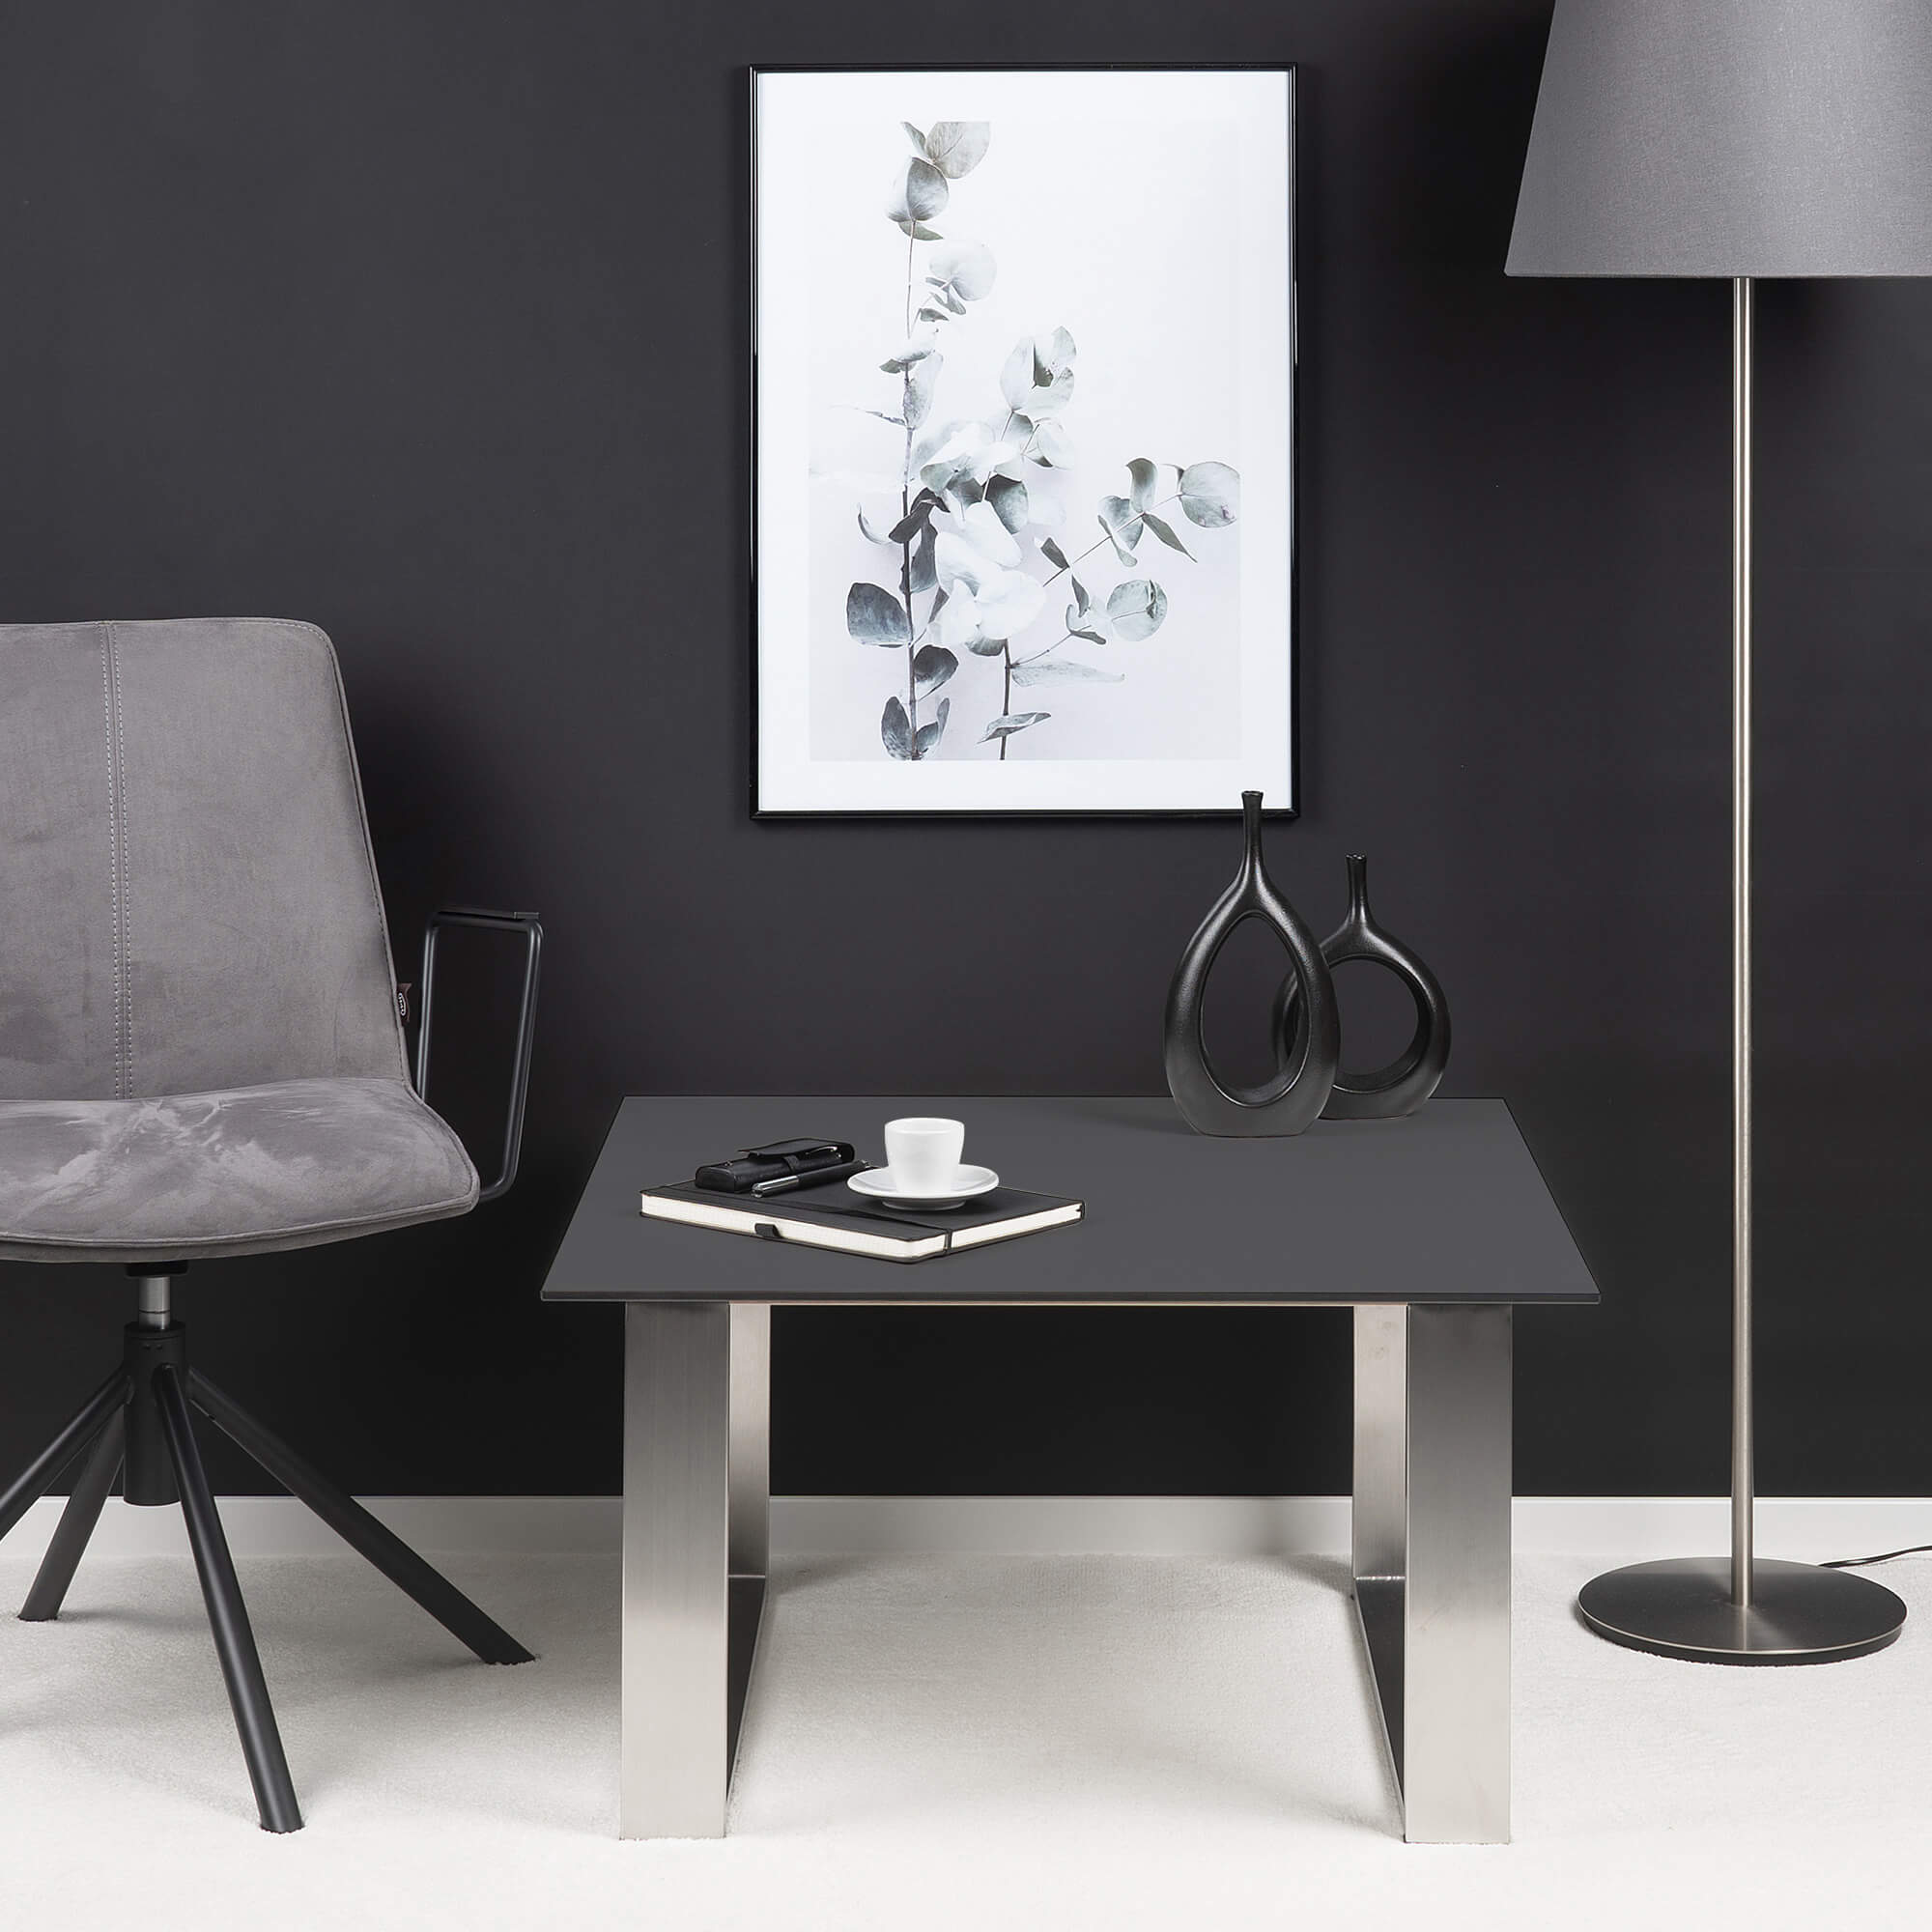 Dark-grey-sofa-table-square-round-shape-comparison